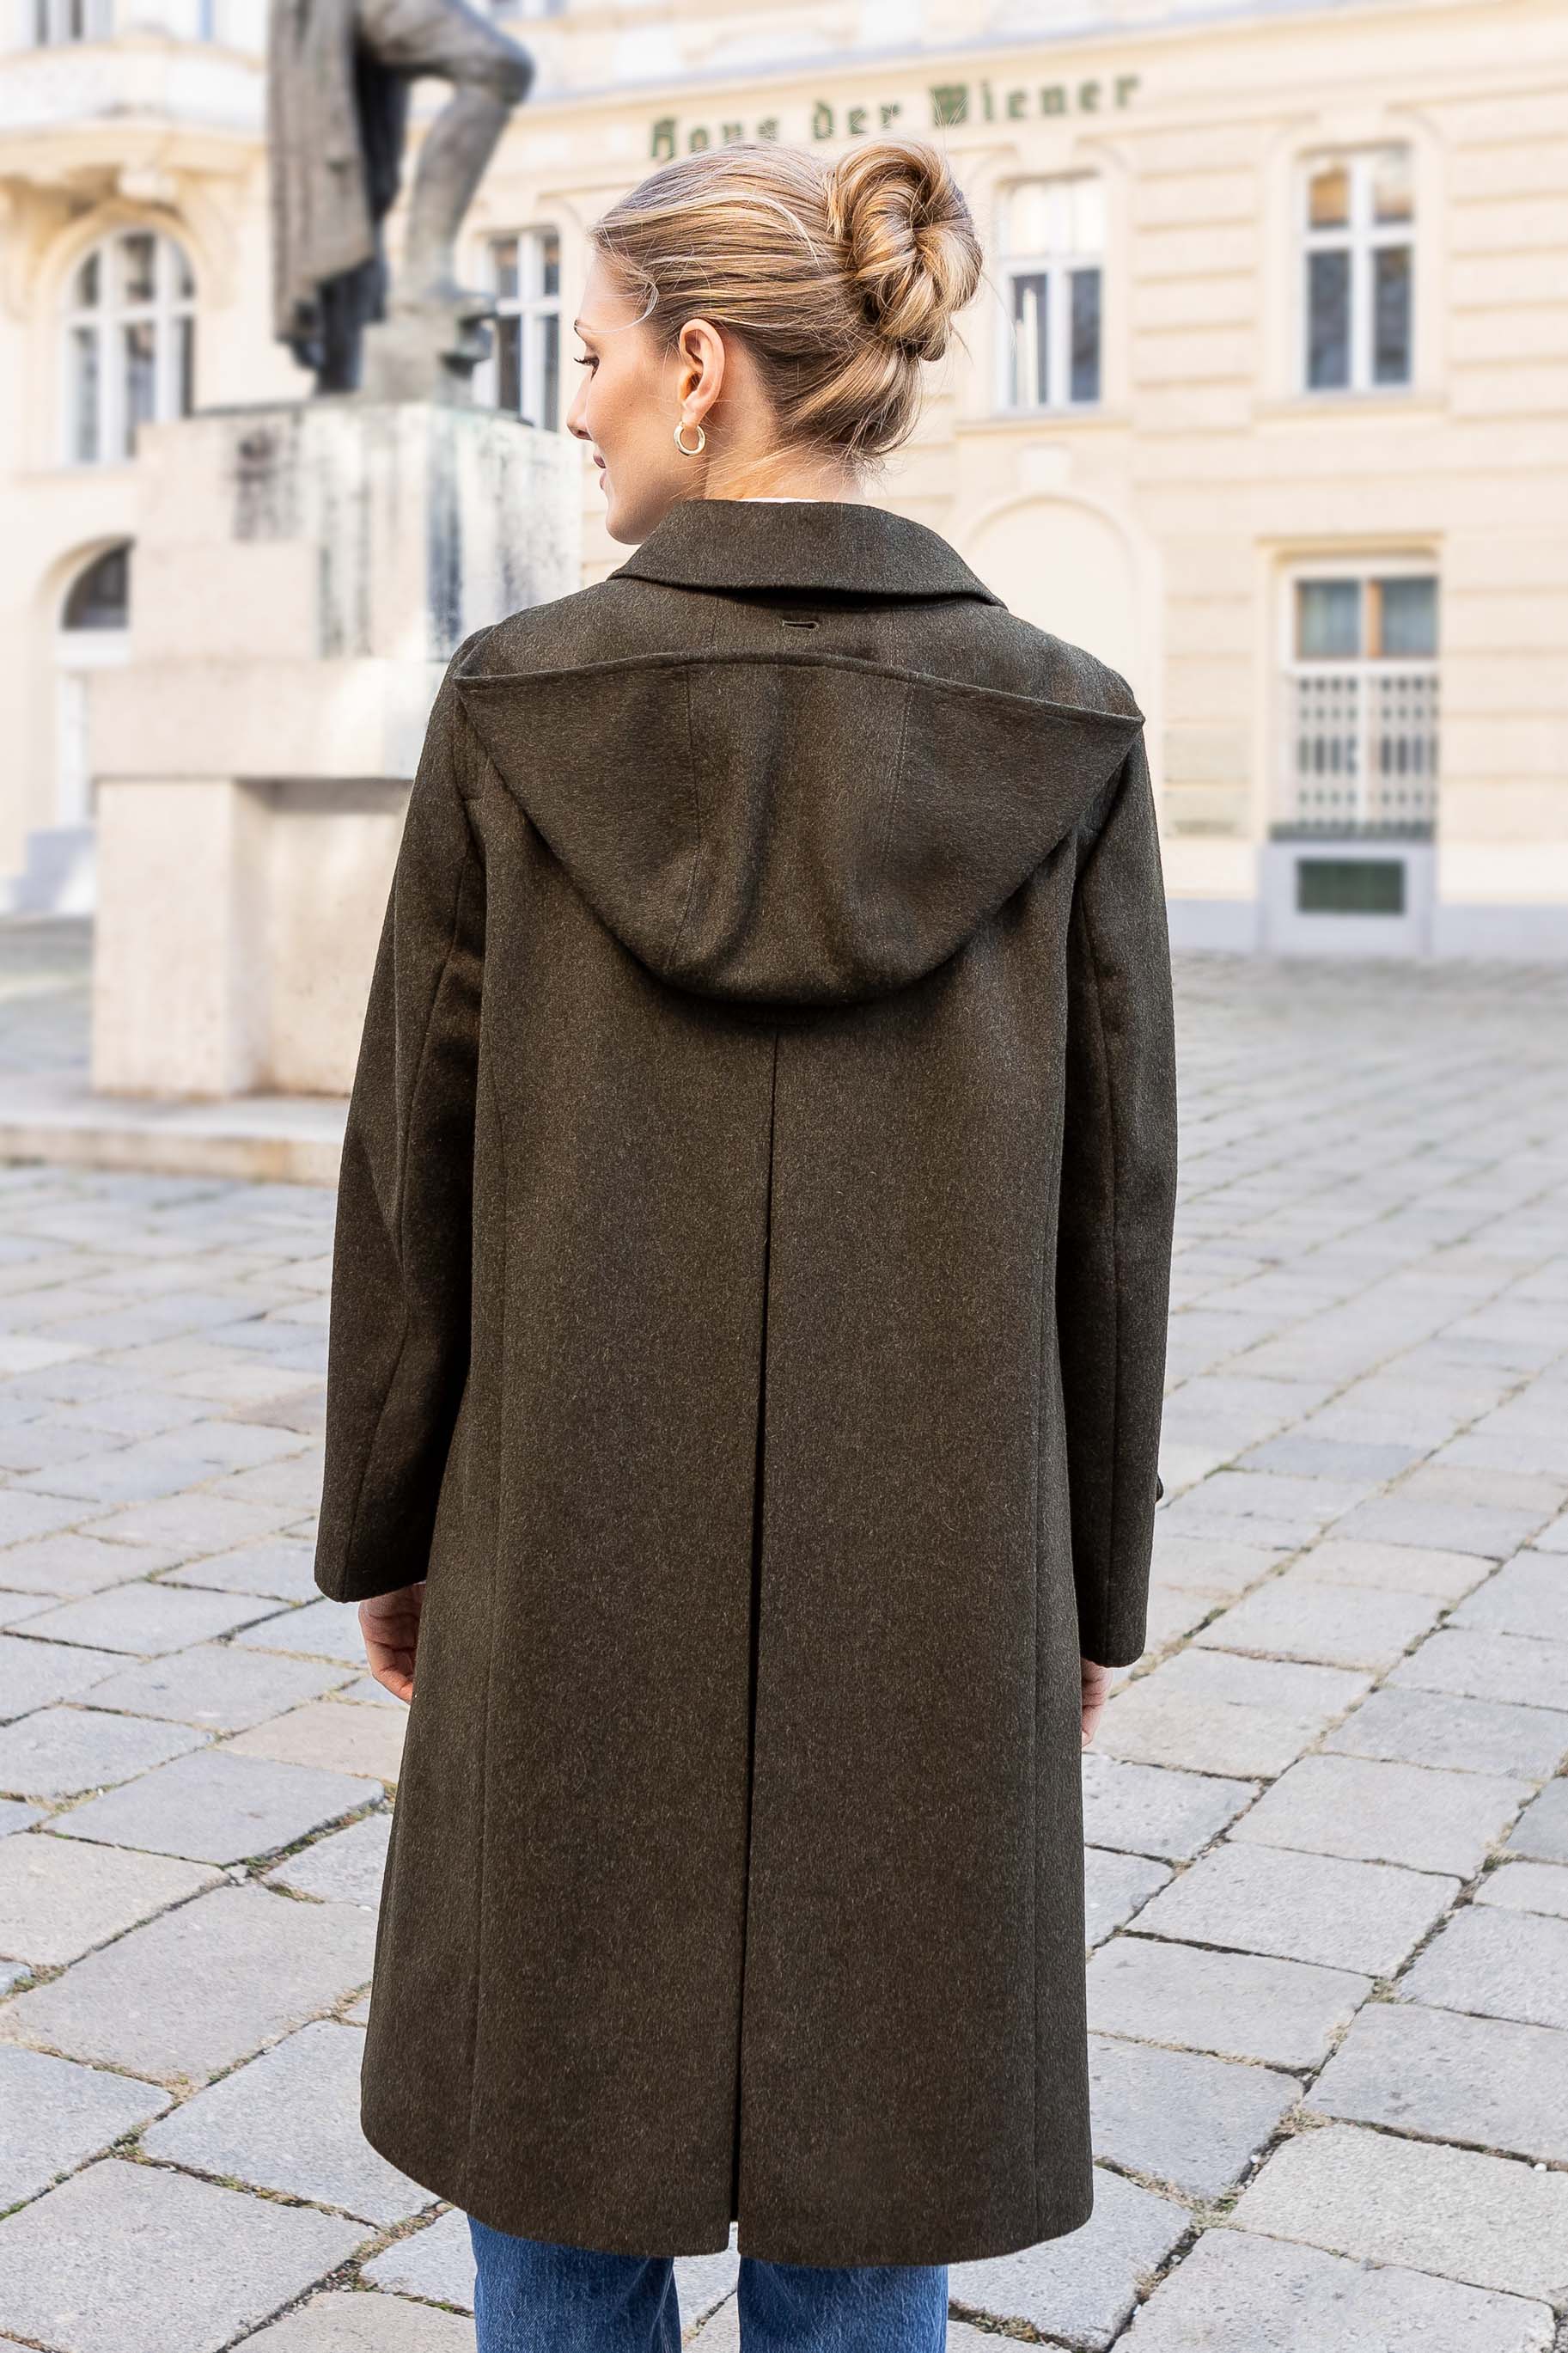 Full Length Long Wool Overcoats for Men's and Women's - Robert W